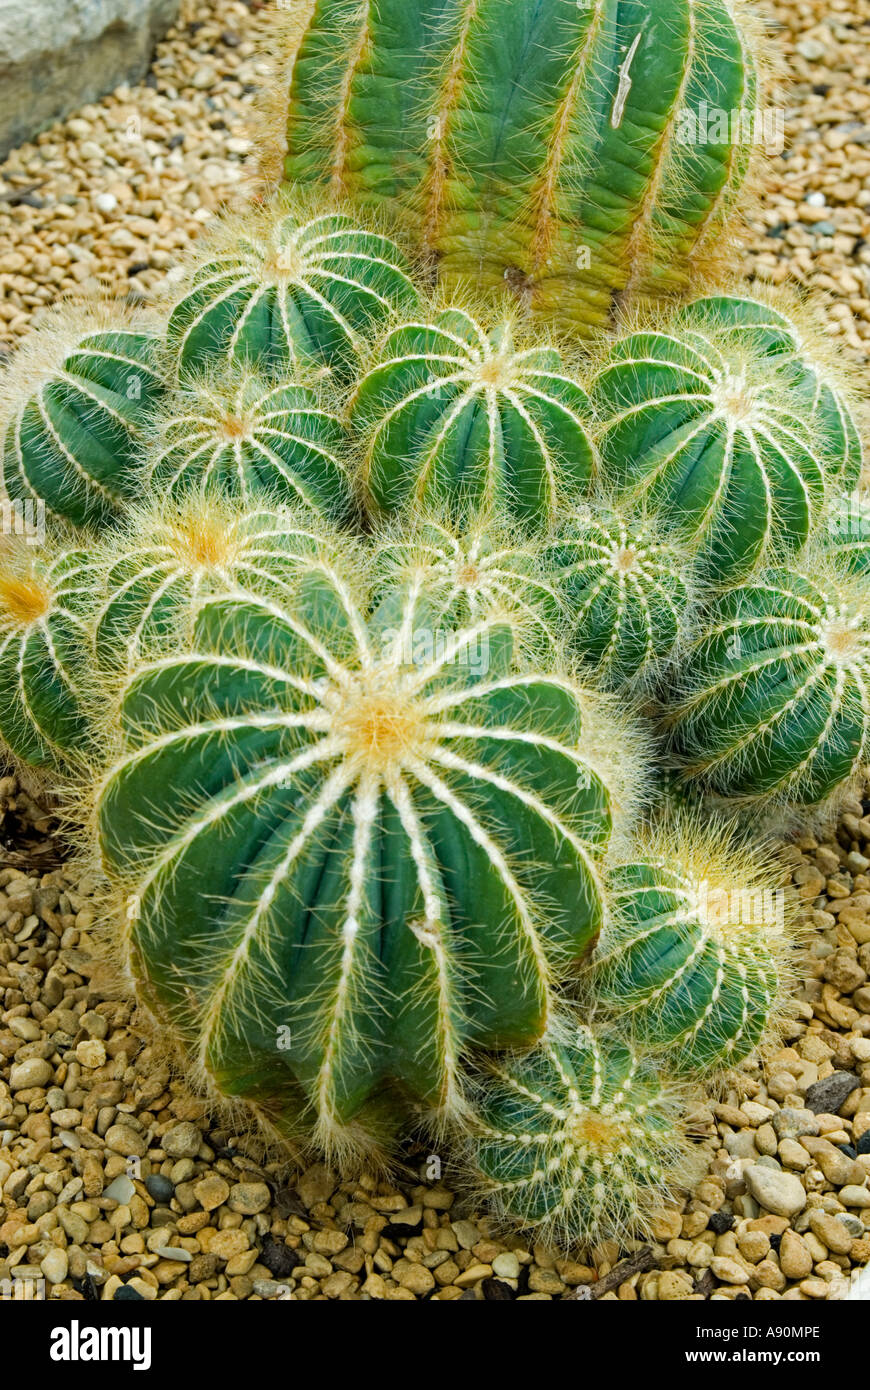 Barrel Cactus (Notocactus magnificus) Stock Photo